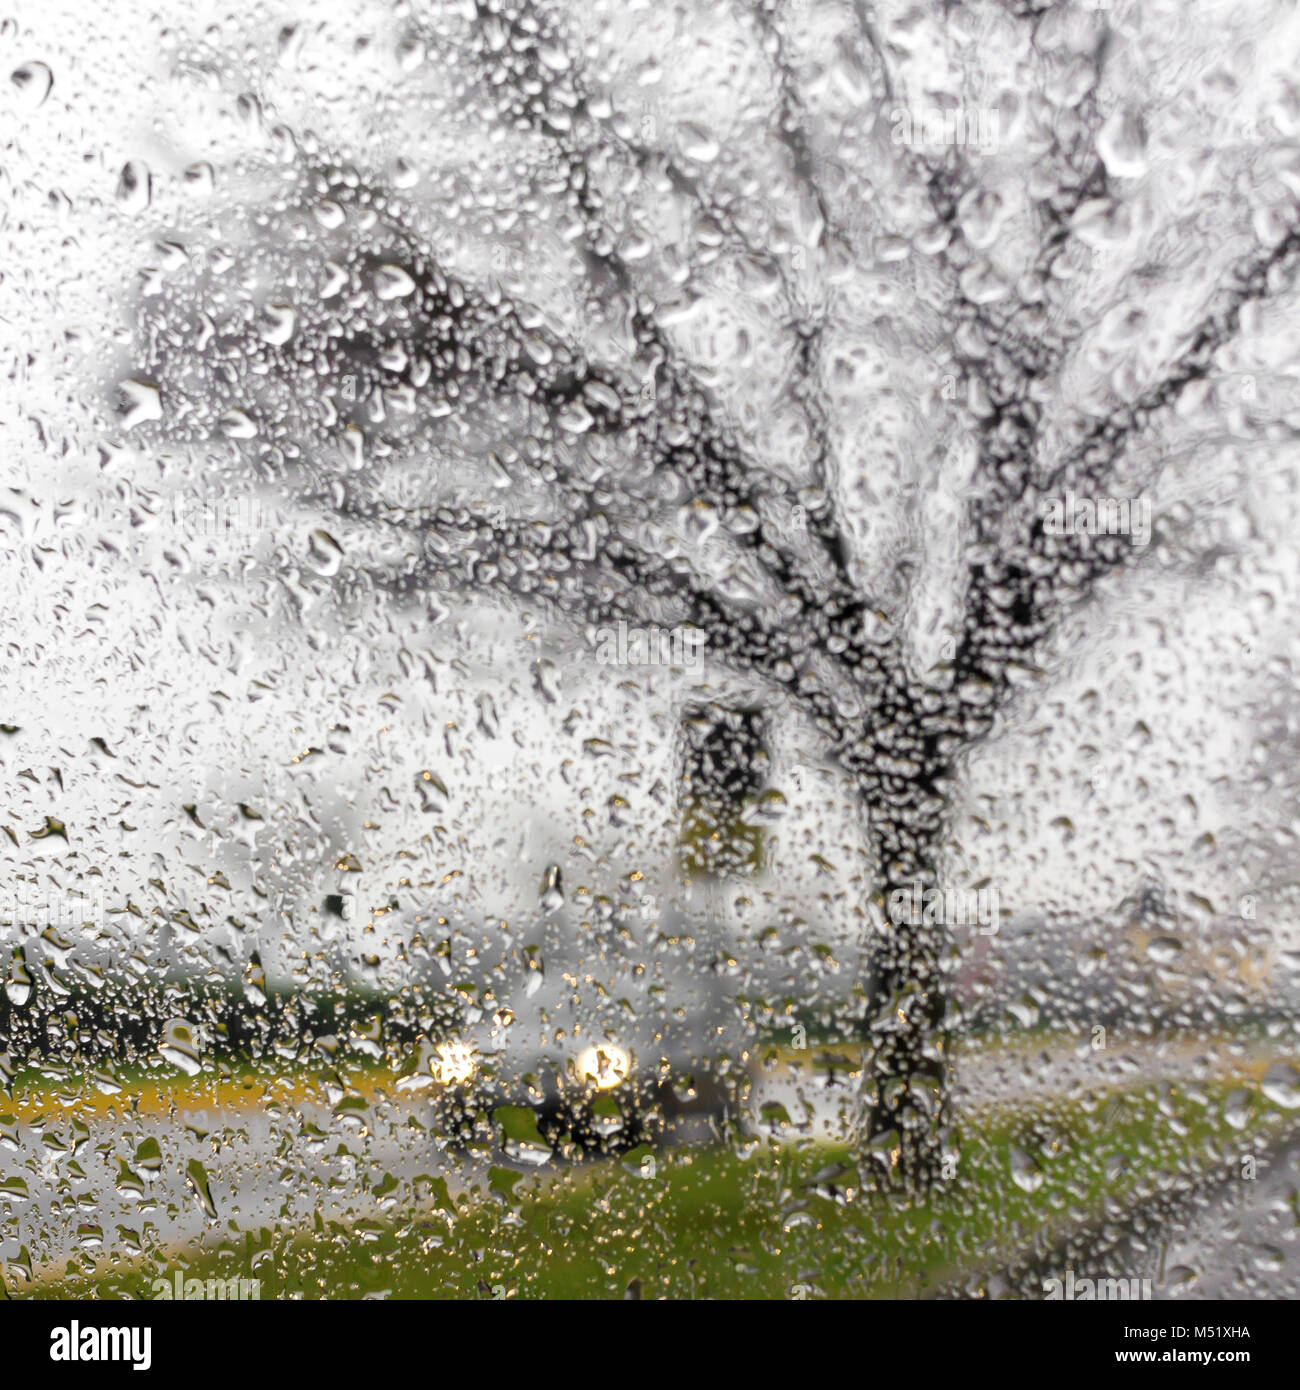 L'intérieur de la voiture quand il pleut Banque D'Images